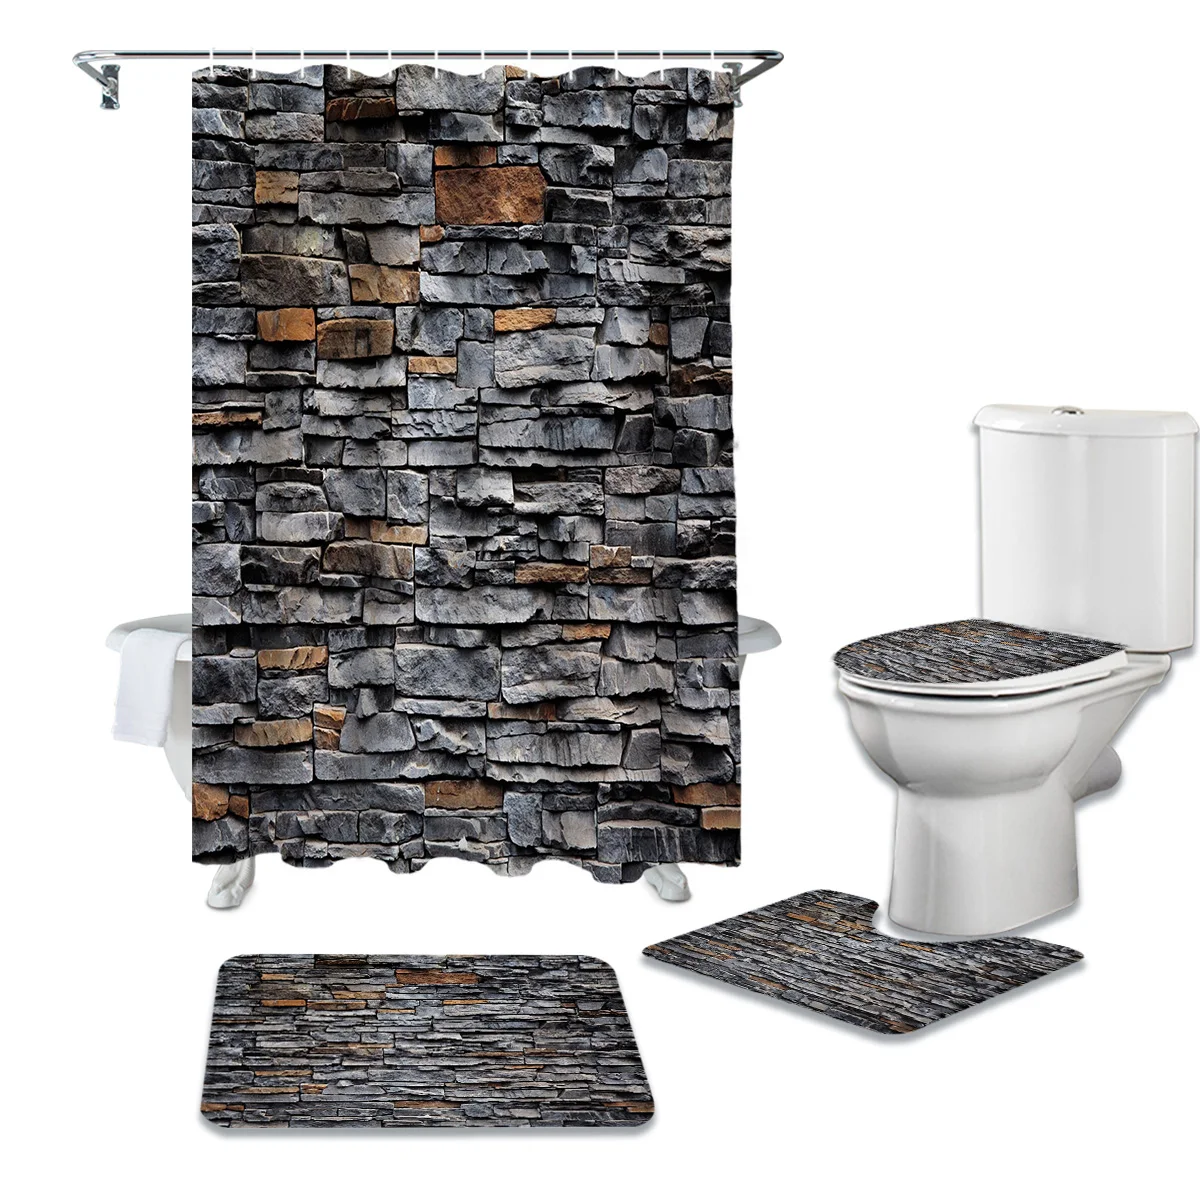 

Черная душевая занавеска с принтом в стиле ретро, ковер с каменной стеной, крышка для туалета, коврик для ванной комнаты, бытовой набор